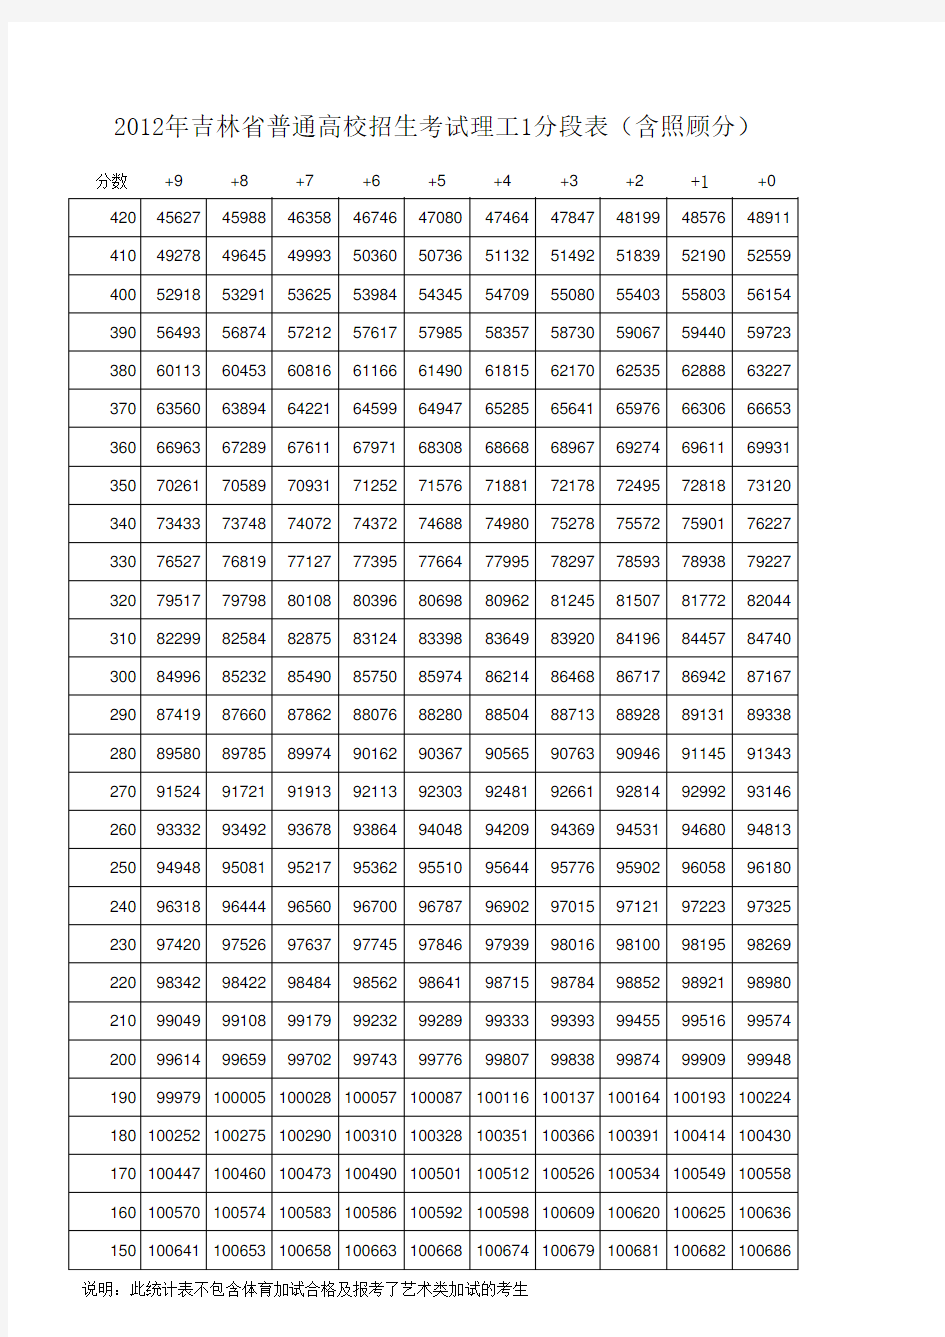 2012吉林省高考一分段分段表(含照顾分)